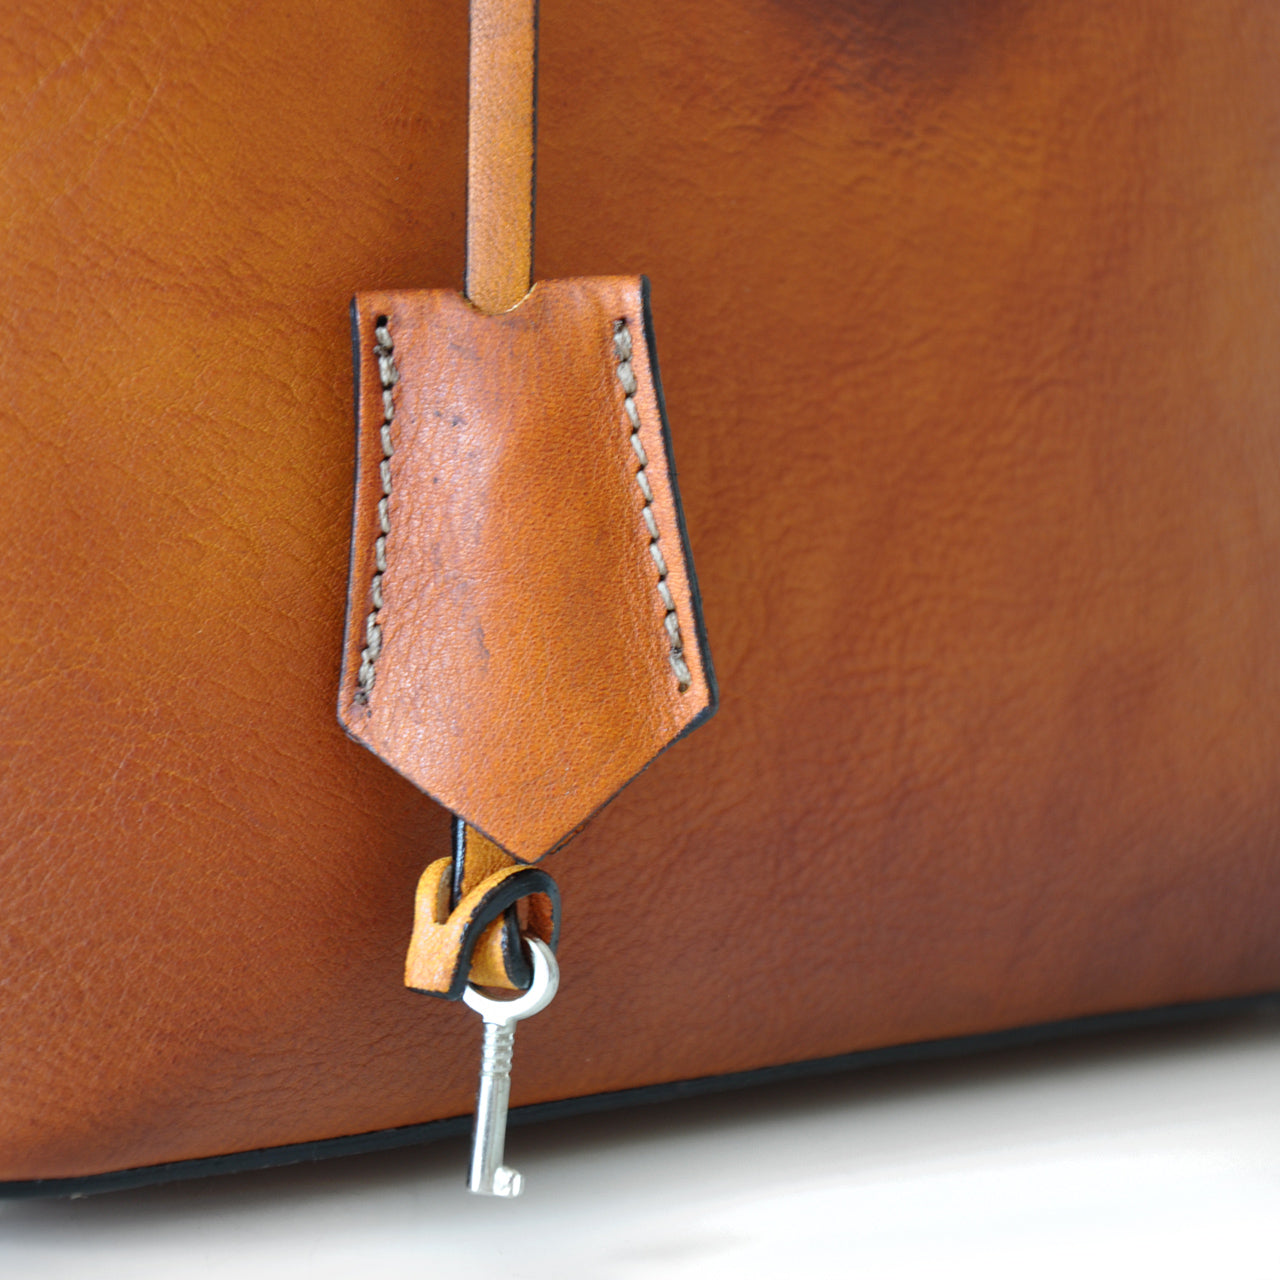 Pratesi Versilia Small Bruce Handbag in genuine Italian leather - Vegetable Tanned Italian Leather Violet